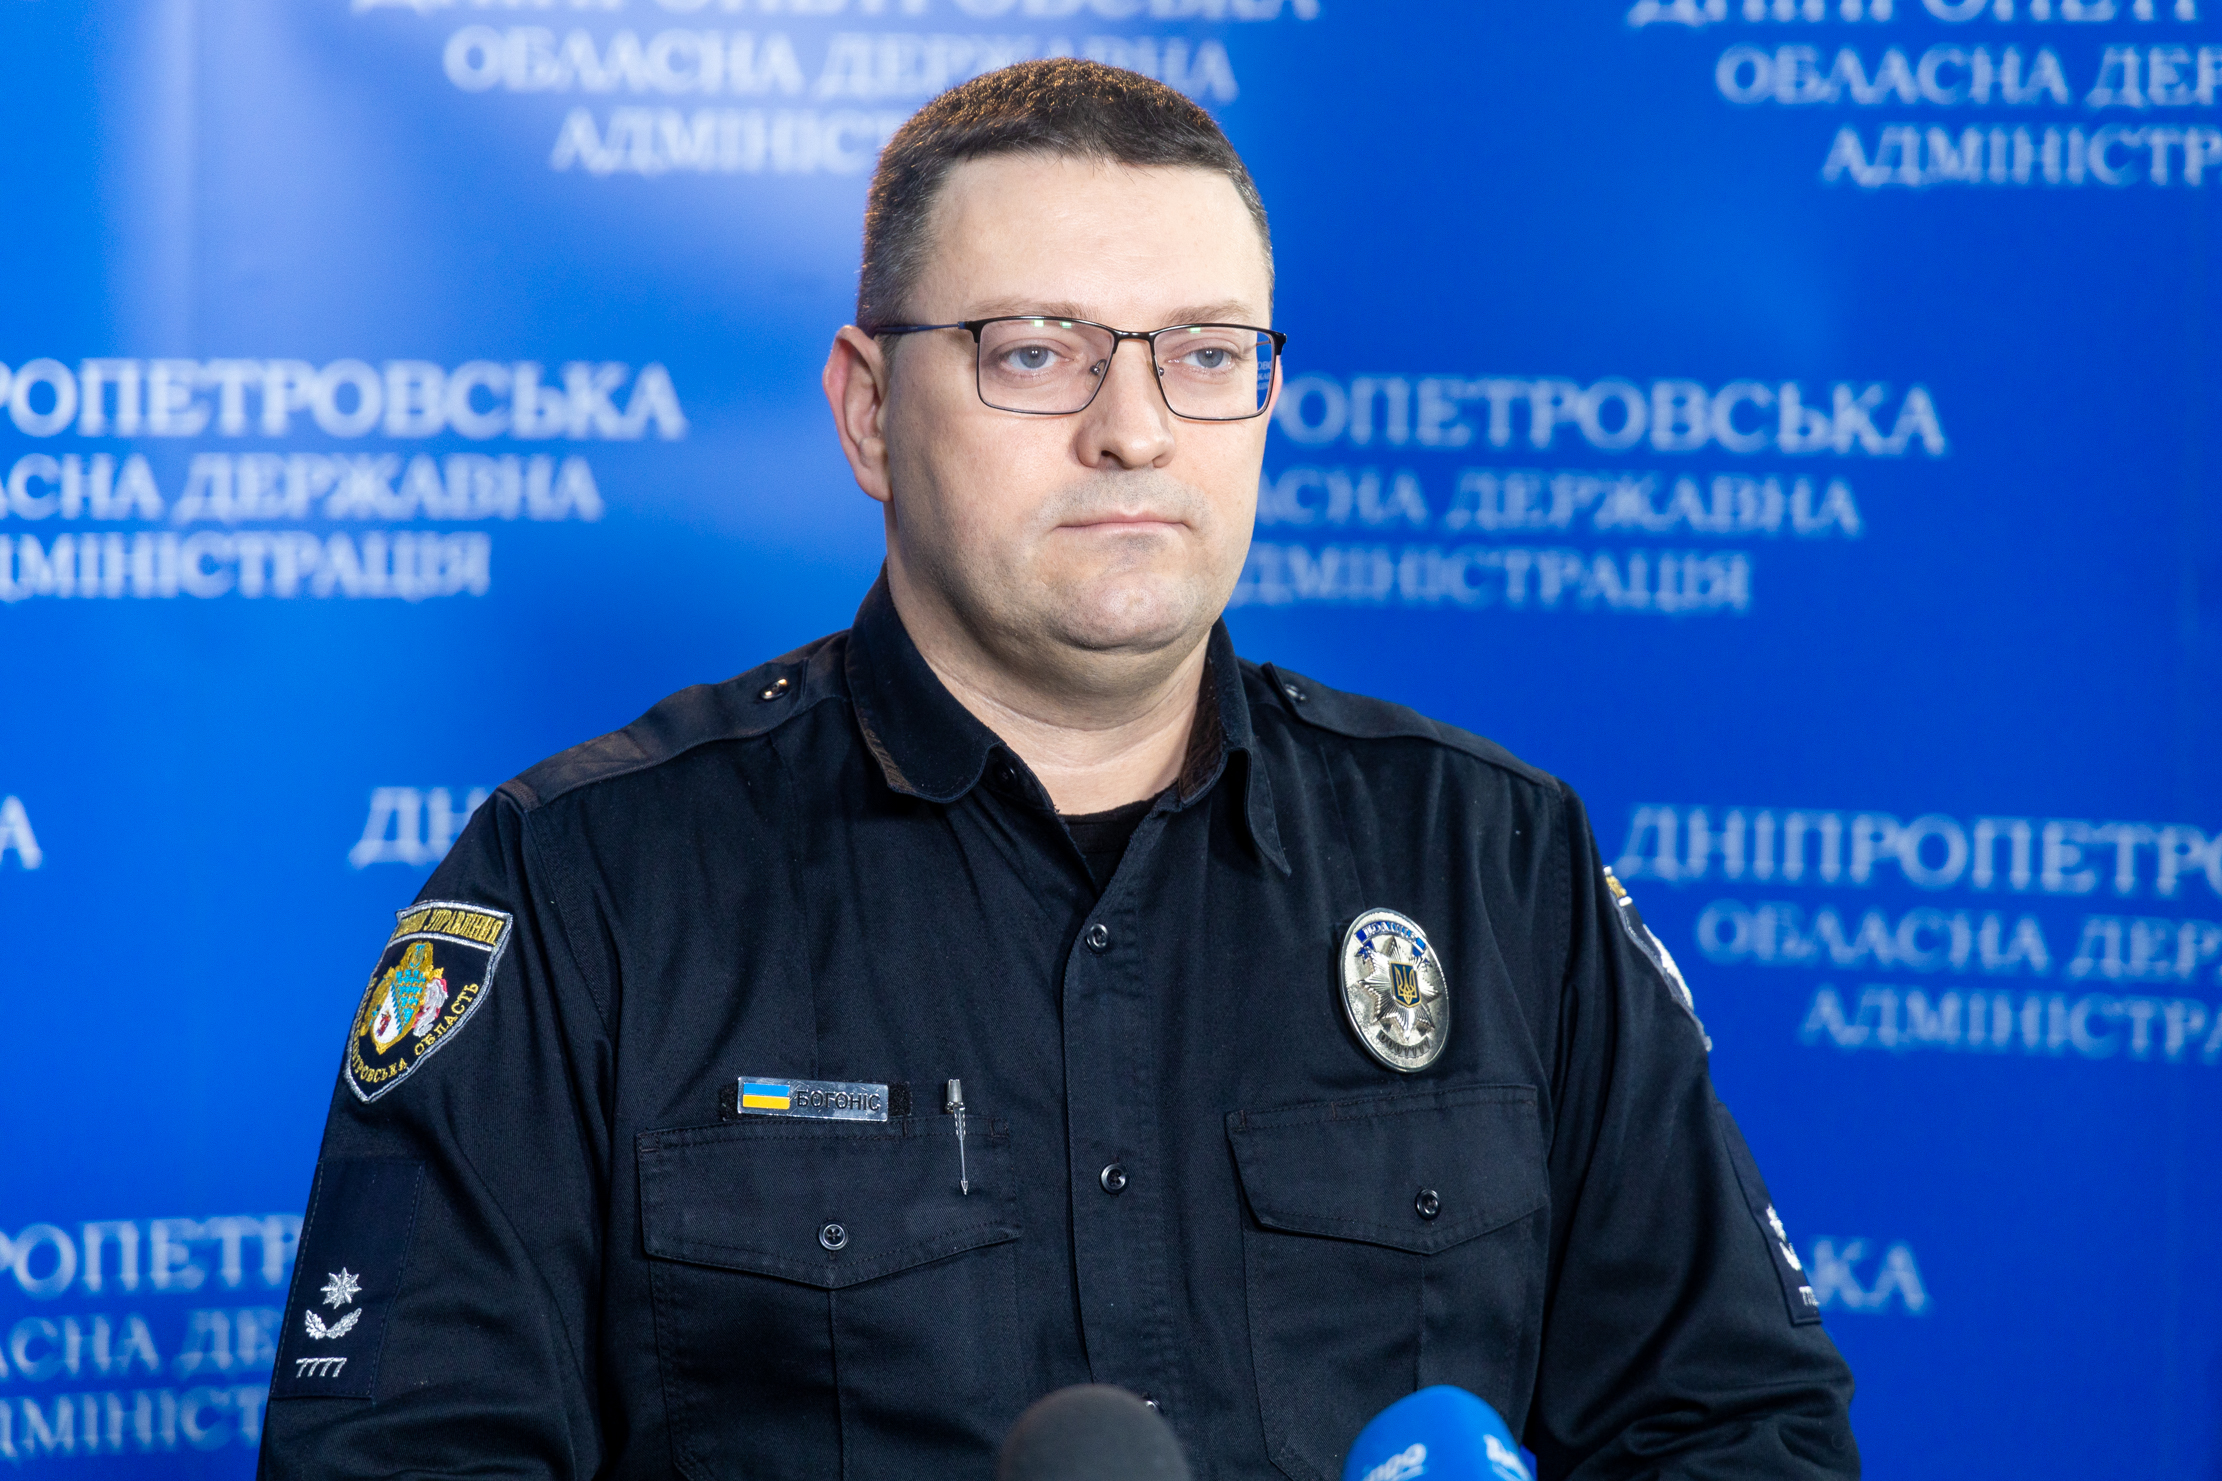 Мешканці Дніпропетровщини допомагають поліції виявляти диверсантів